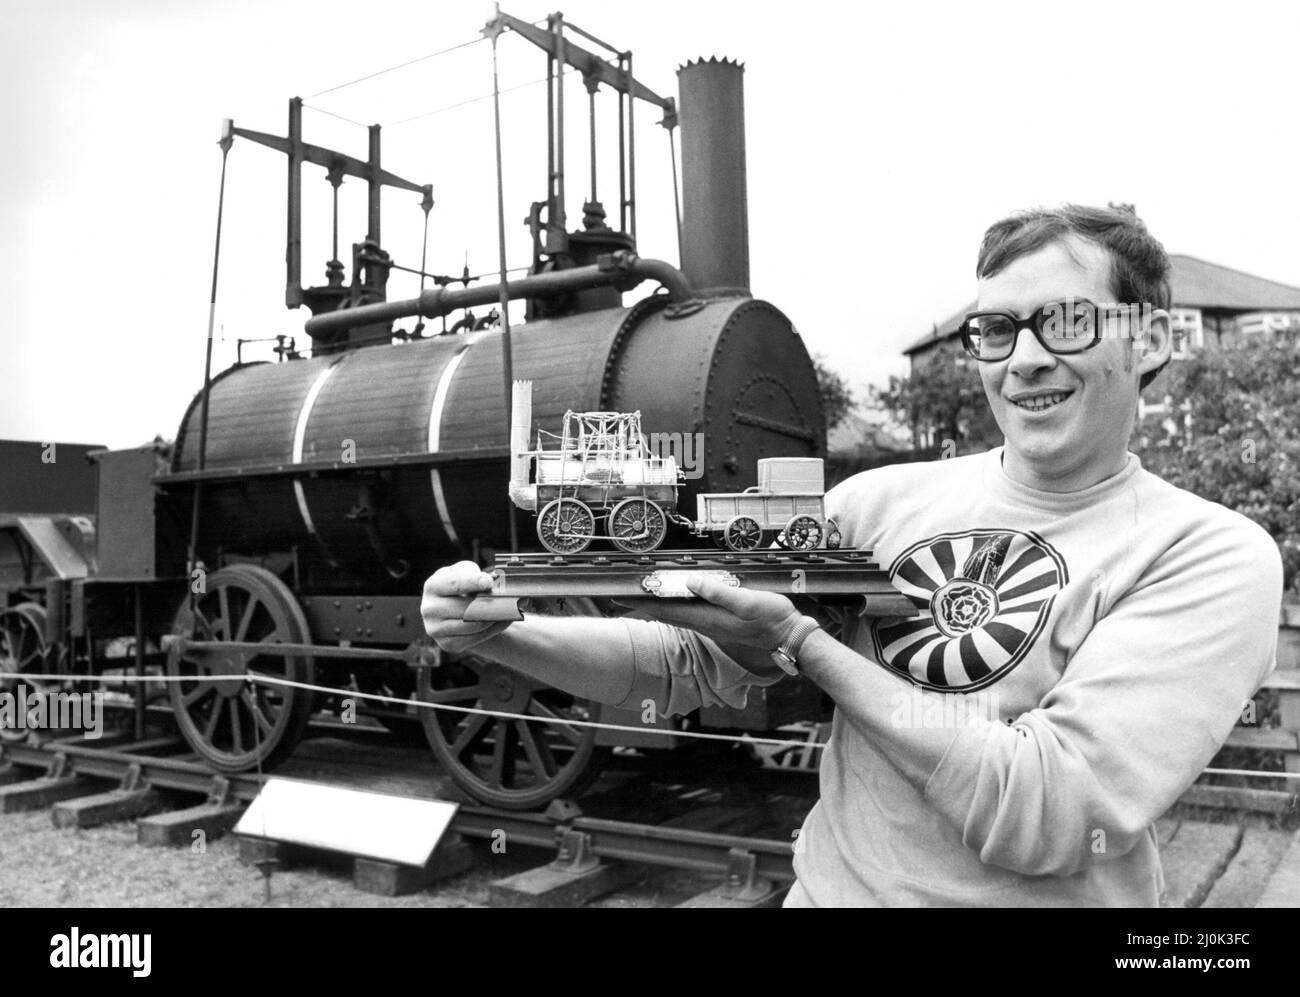 Ein Highlight eines Eisenbahnkarnevals war ein massives silbernes Modell - Leihgabe der Queen Mother. Das Modell von George Stephensons Locomotion No1 ist etwa 25.000 wert Cyril Taylor hält das Modell neben der Replika von Locomotion No. 1 am 7.. Juni 1981 Stockfoto